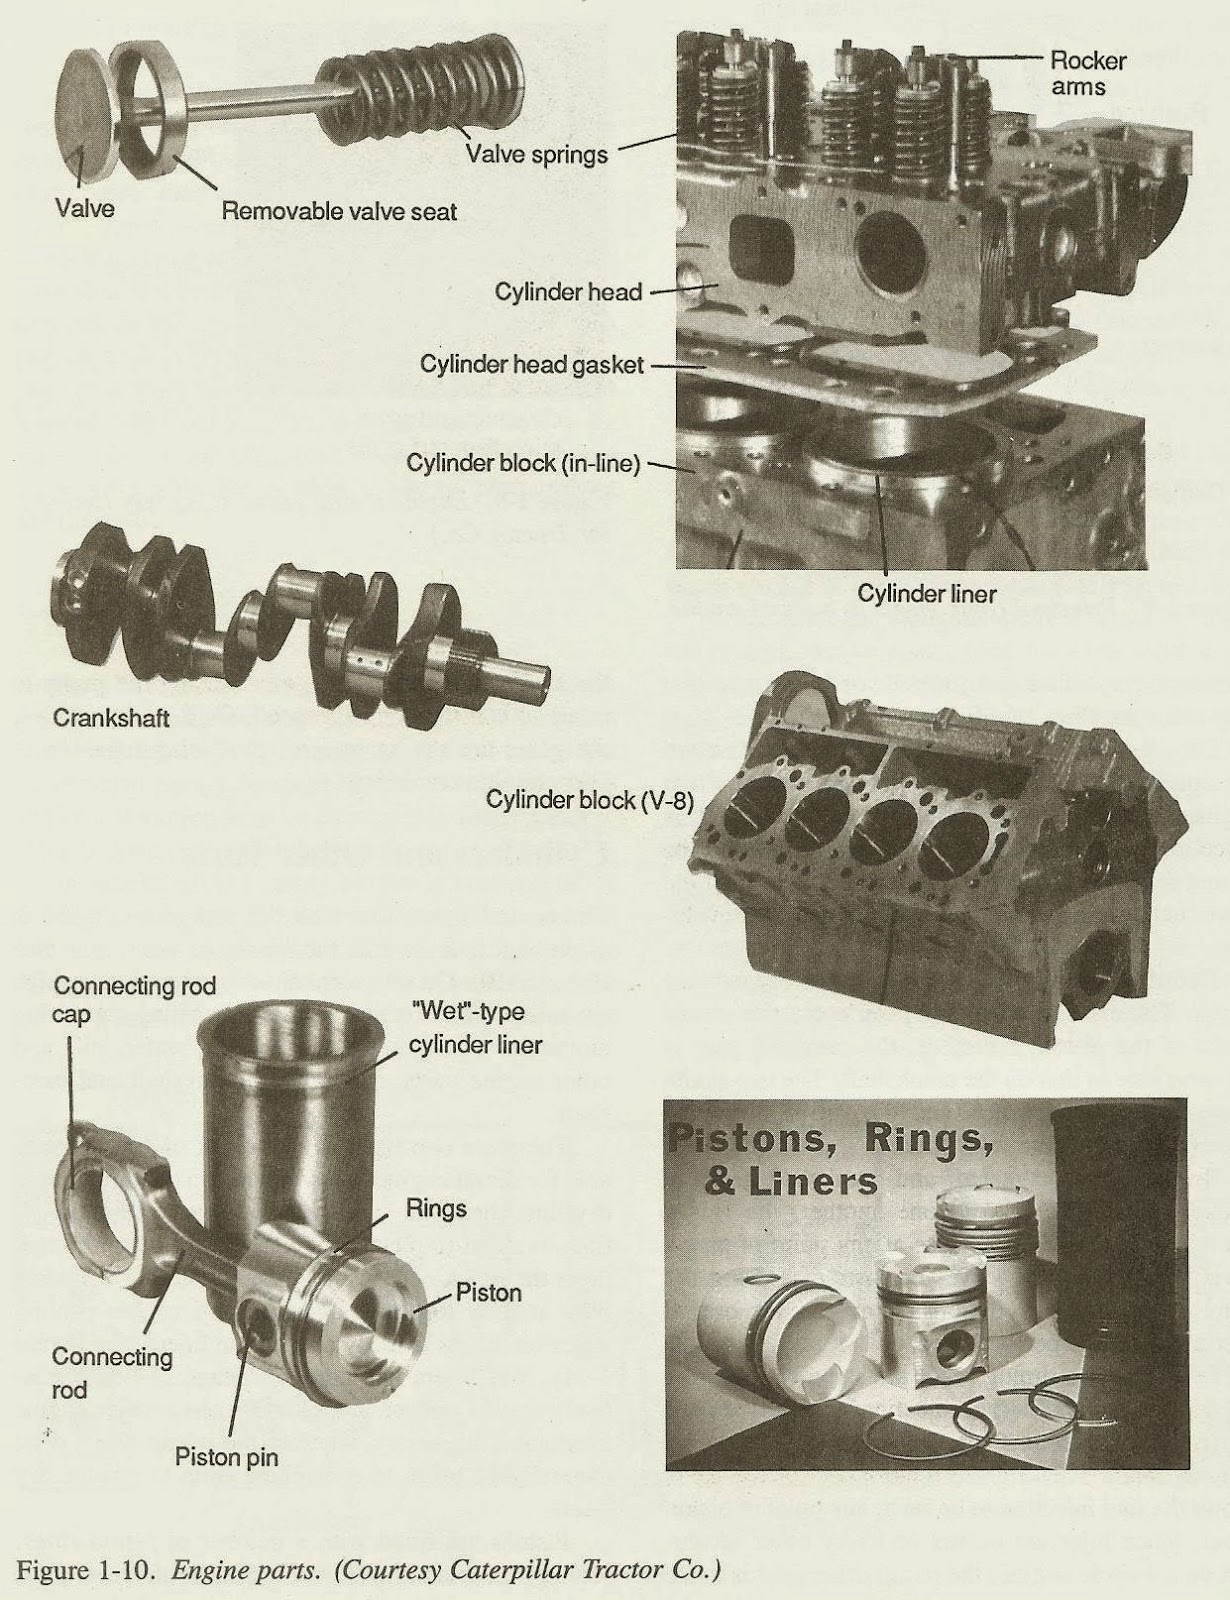 basic for junior marine engineers-rammarsea: BASIC MARINE DIESEL ENGINES